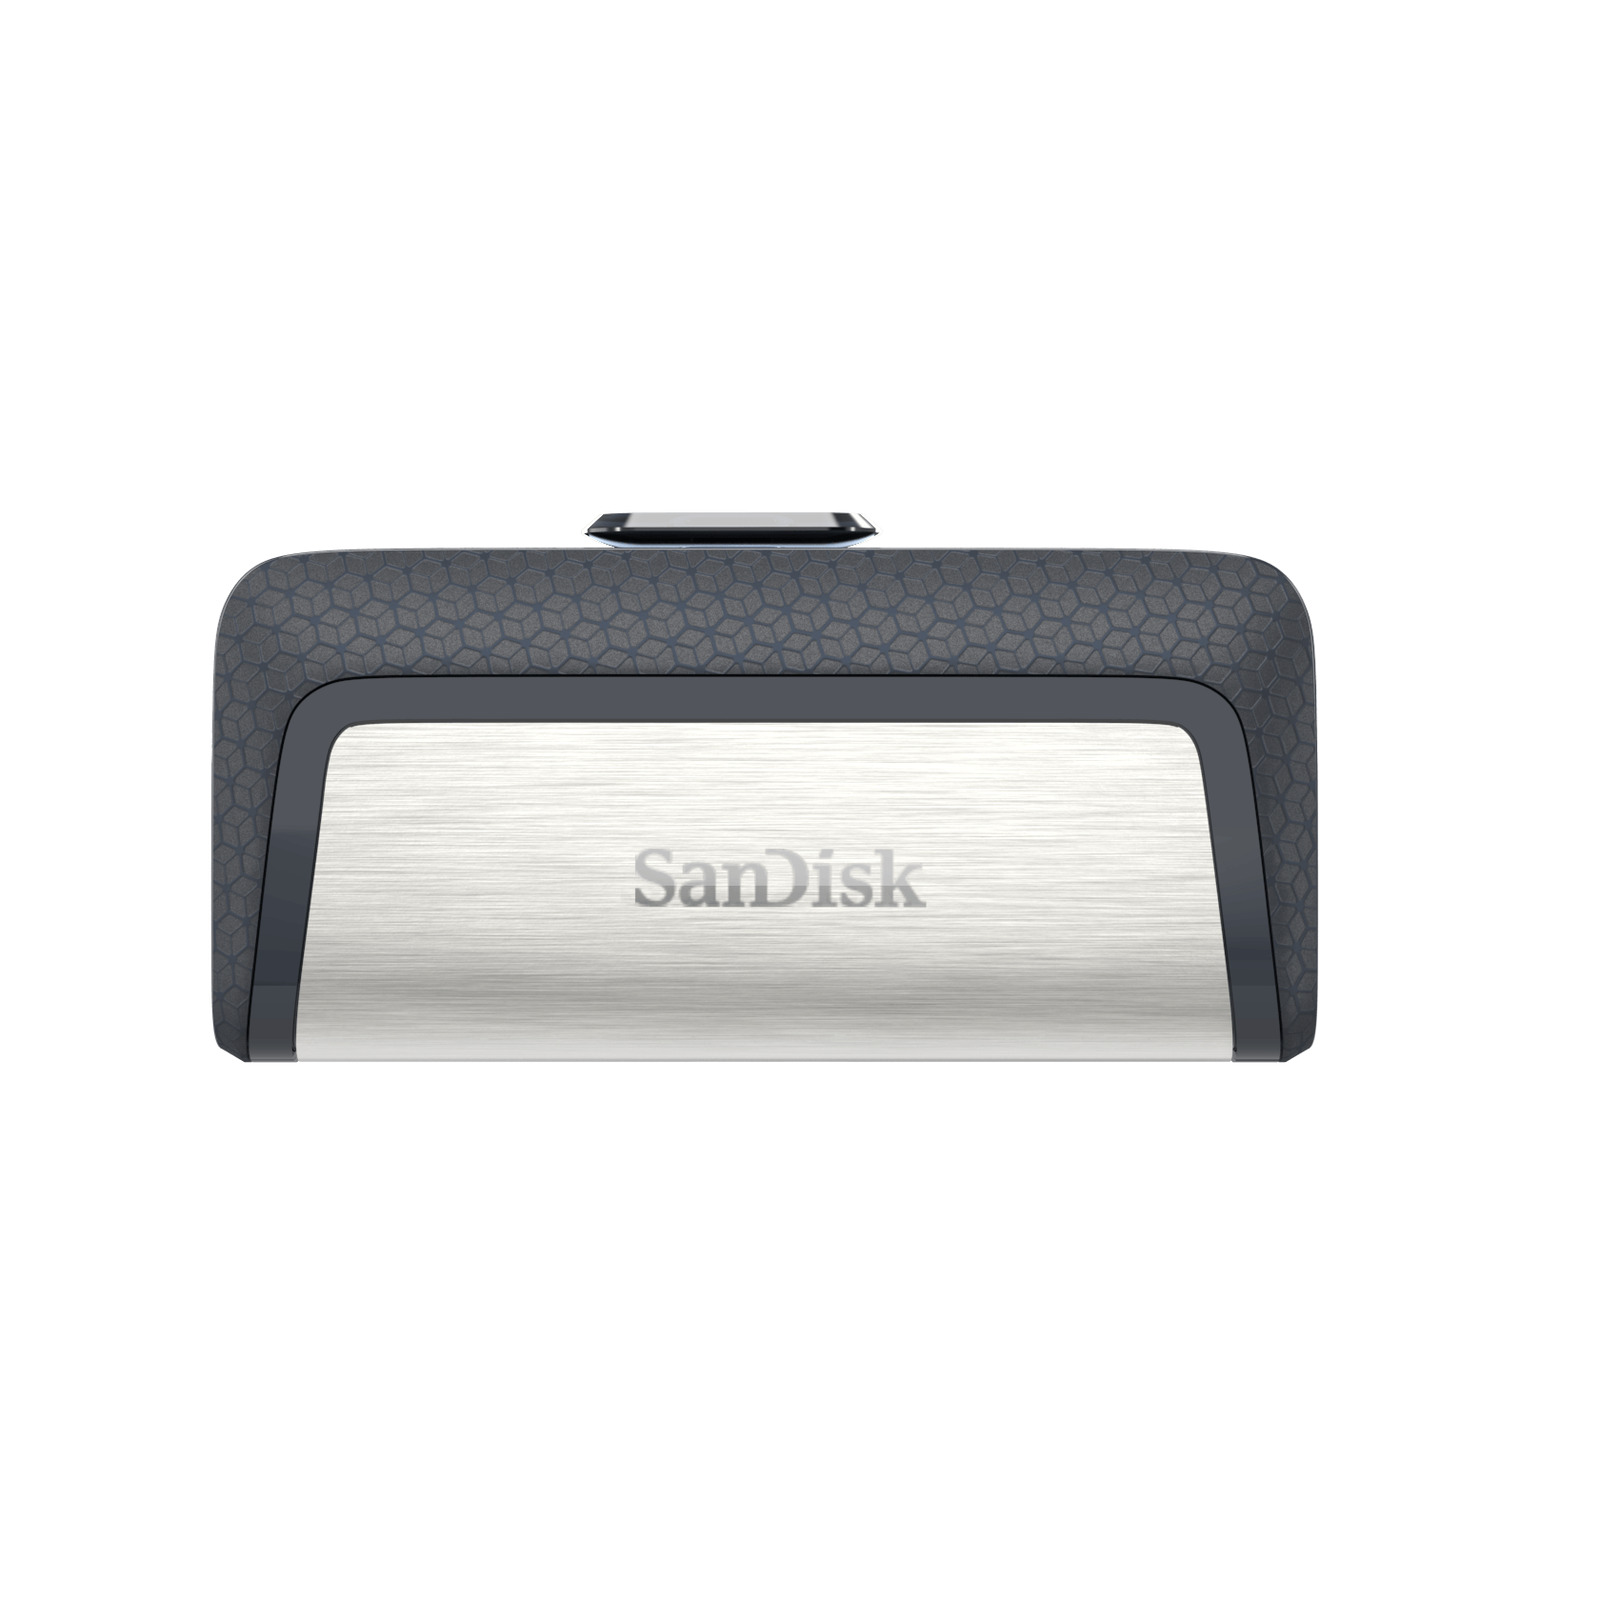 SanDisk 256GB Ultra Dual Drive USB Type-C, USB 3.1 Flash Drive - SDDDC2-256G-A46